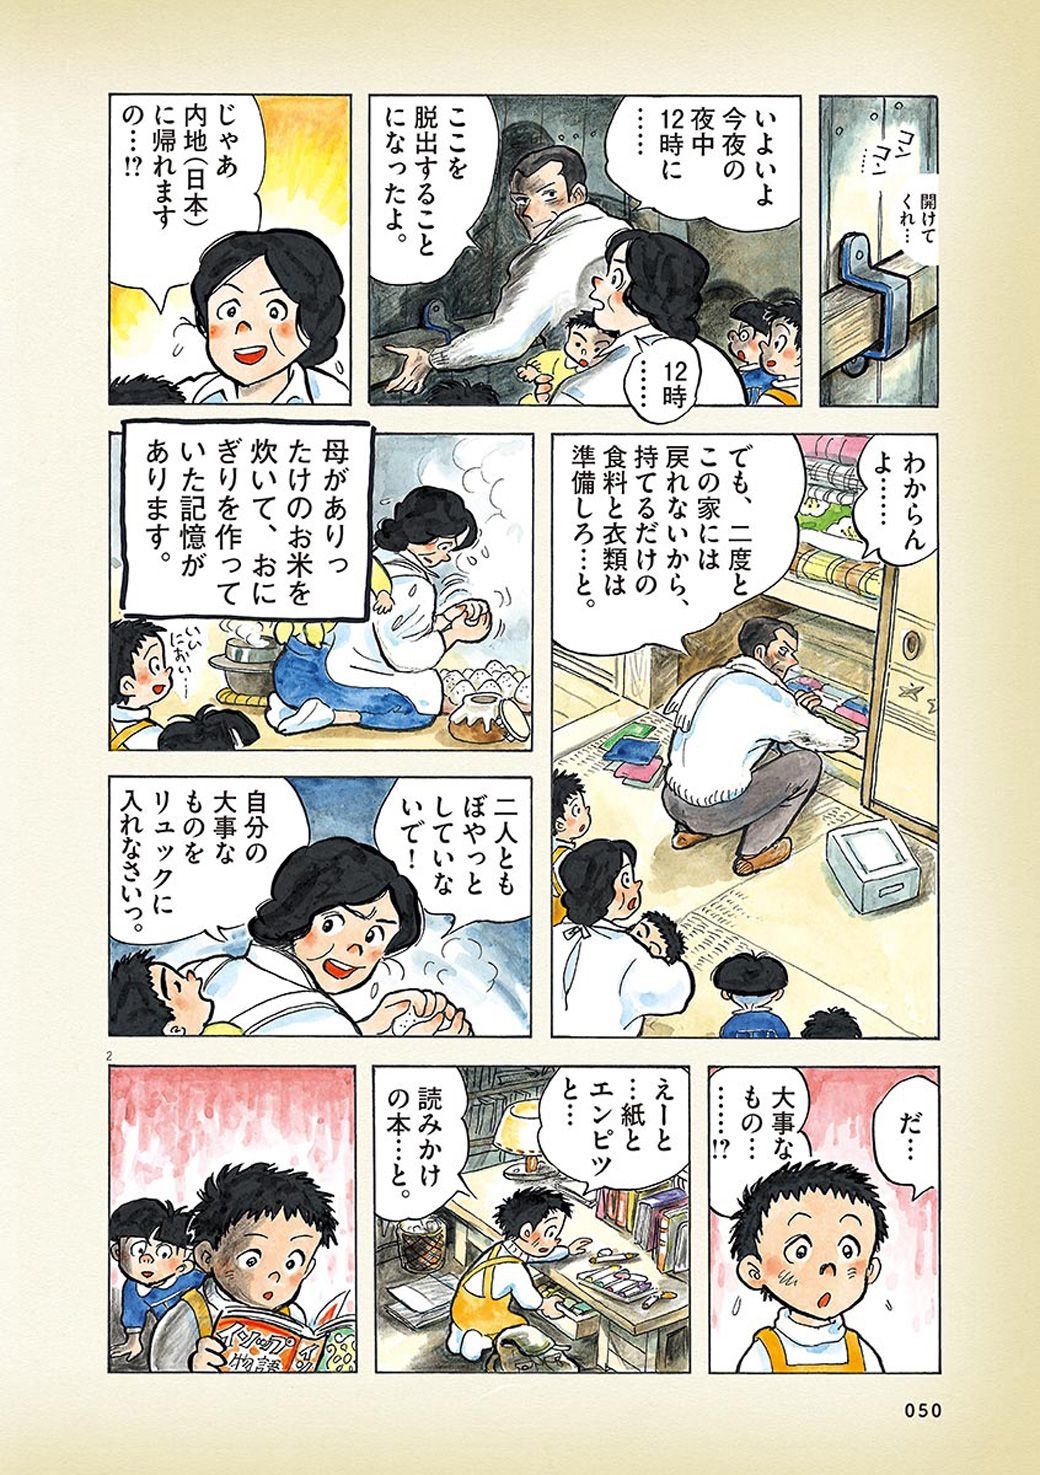 終戦を満州で迎えた日本人家族が脱出した瞬間 漫画 ひねもすのたり日記 第12回 東洋経済オンライン Goo ニュース